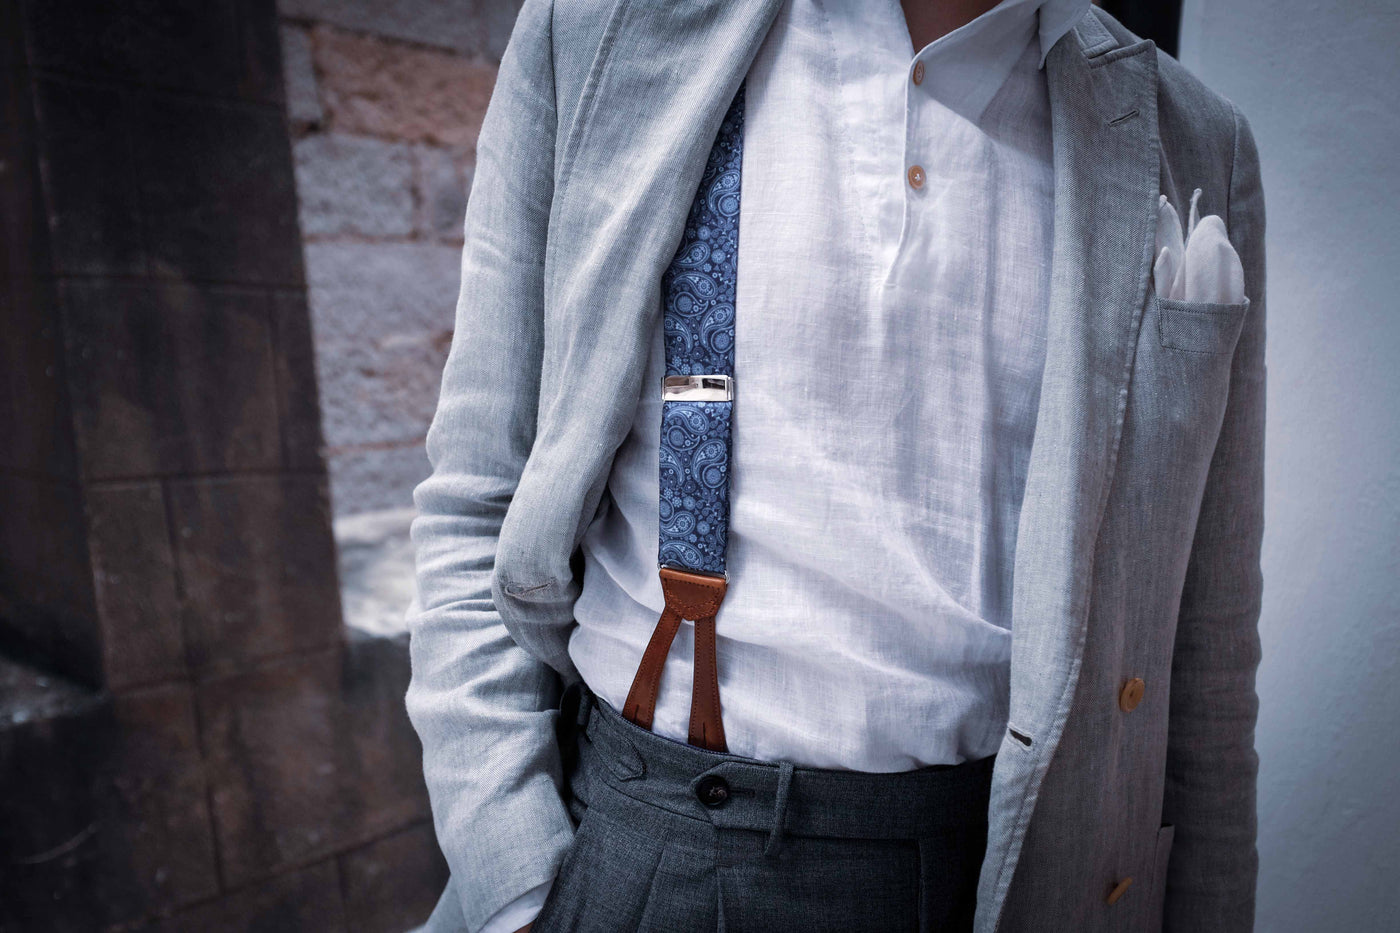 Albert Thurston Braces/ Suspenders Richard James Jacket G. Inglese Linen shirt Rota Trousers White pocket square